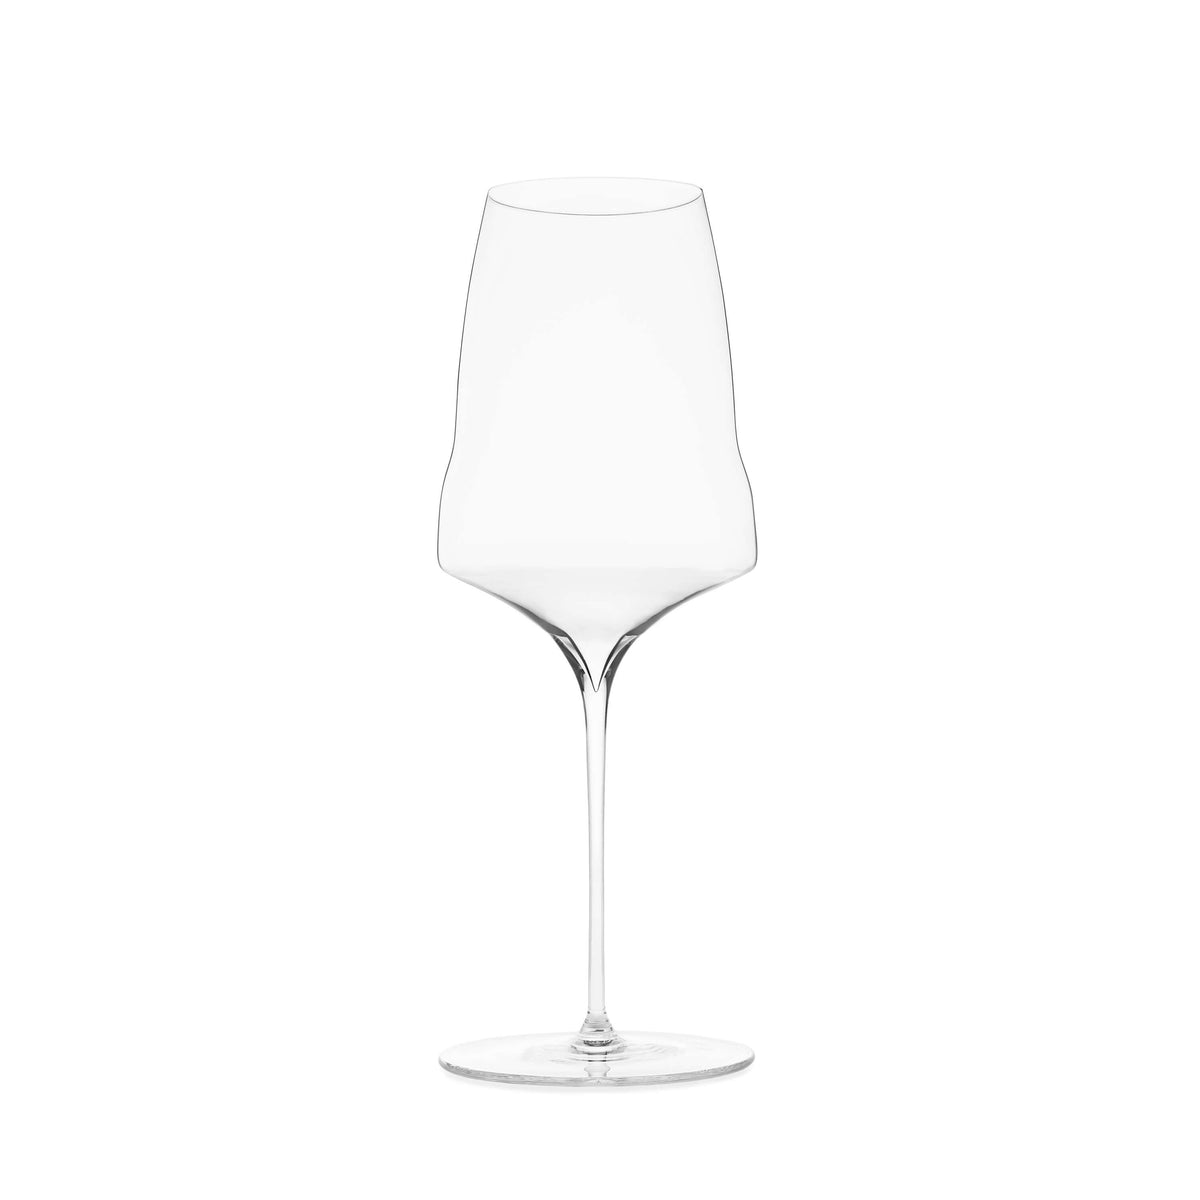 Zalto - Universal Glass - 2 Pack - Union Square Wines